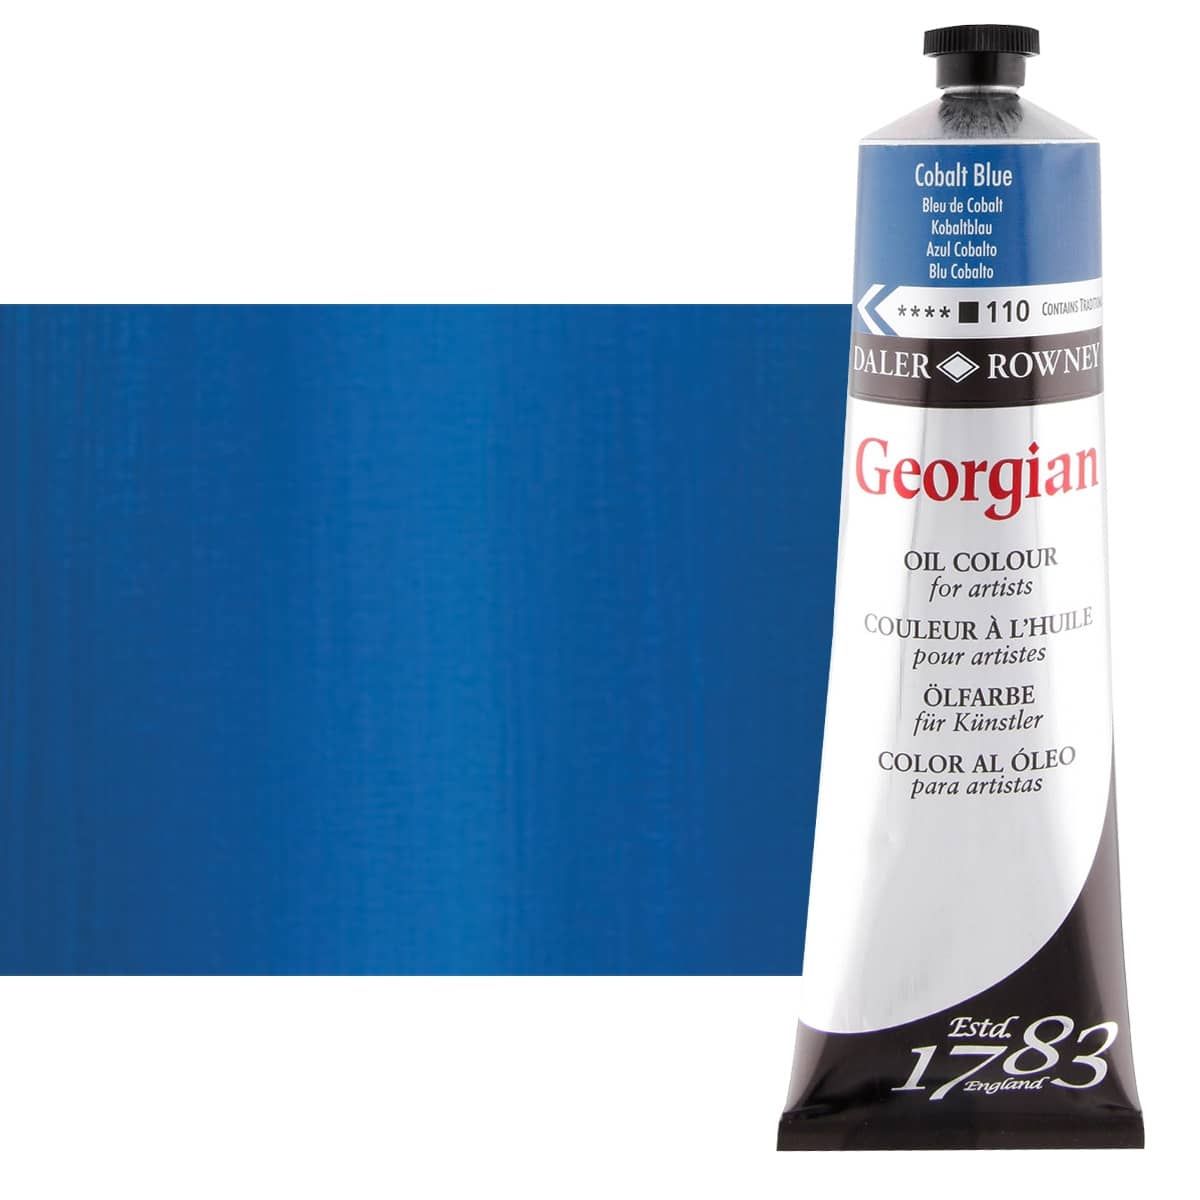 Daler-Rowney Georgian Oil Color 225ml Tube - Cobalt Blue